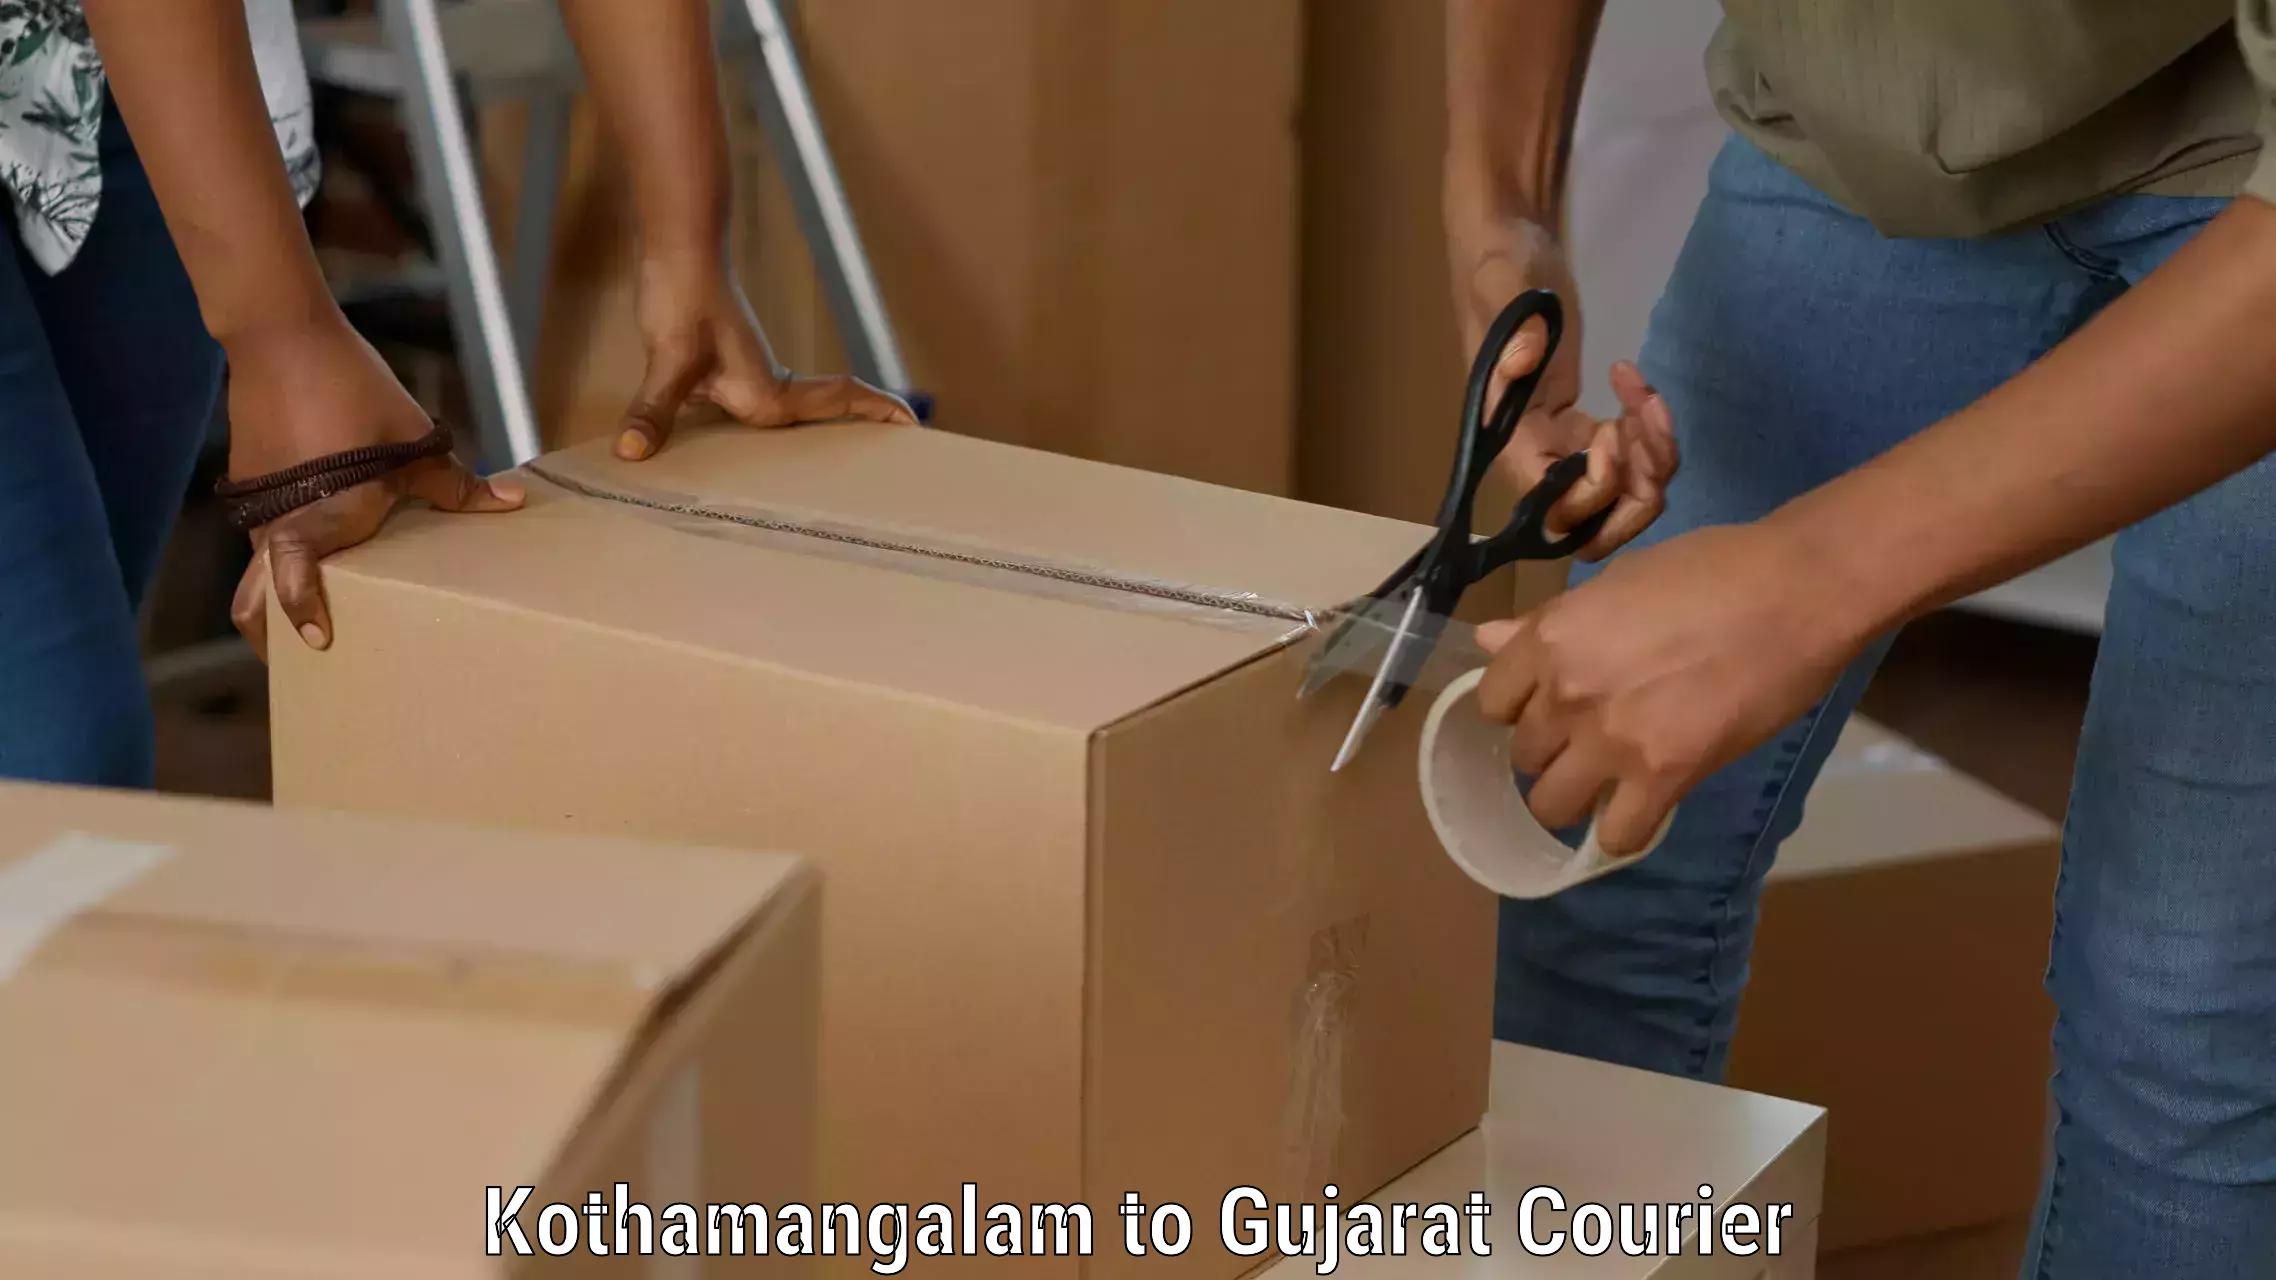 Shipping and handling Kothamangalam to Ahmedabad